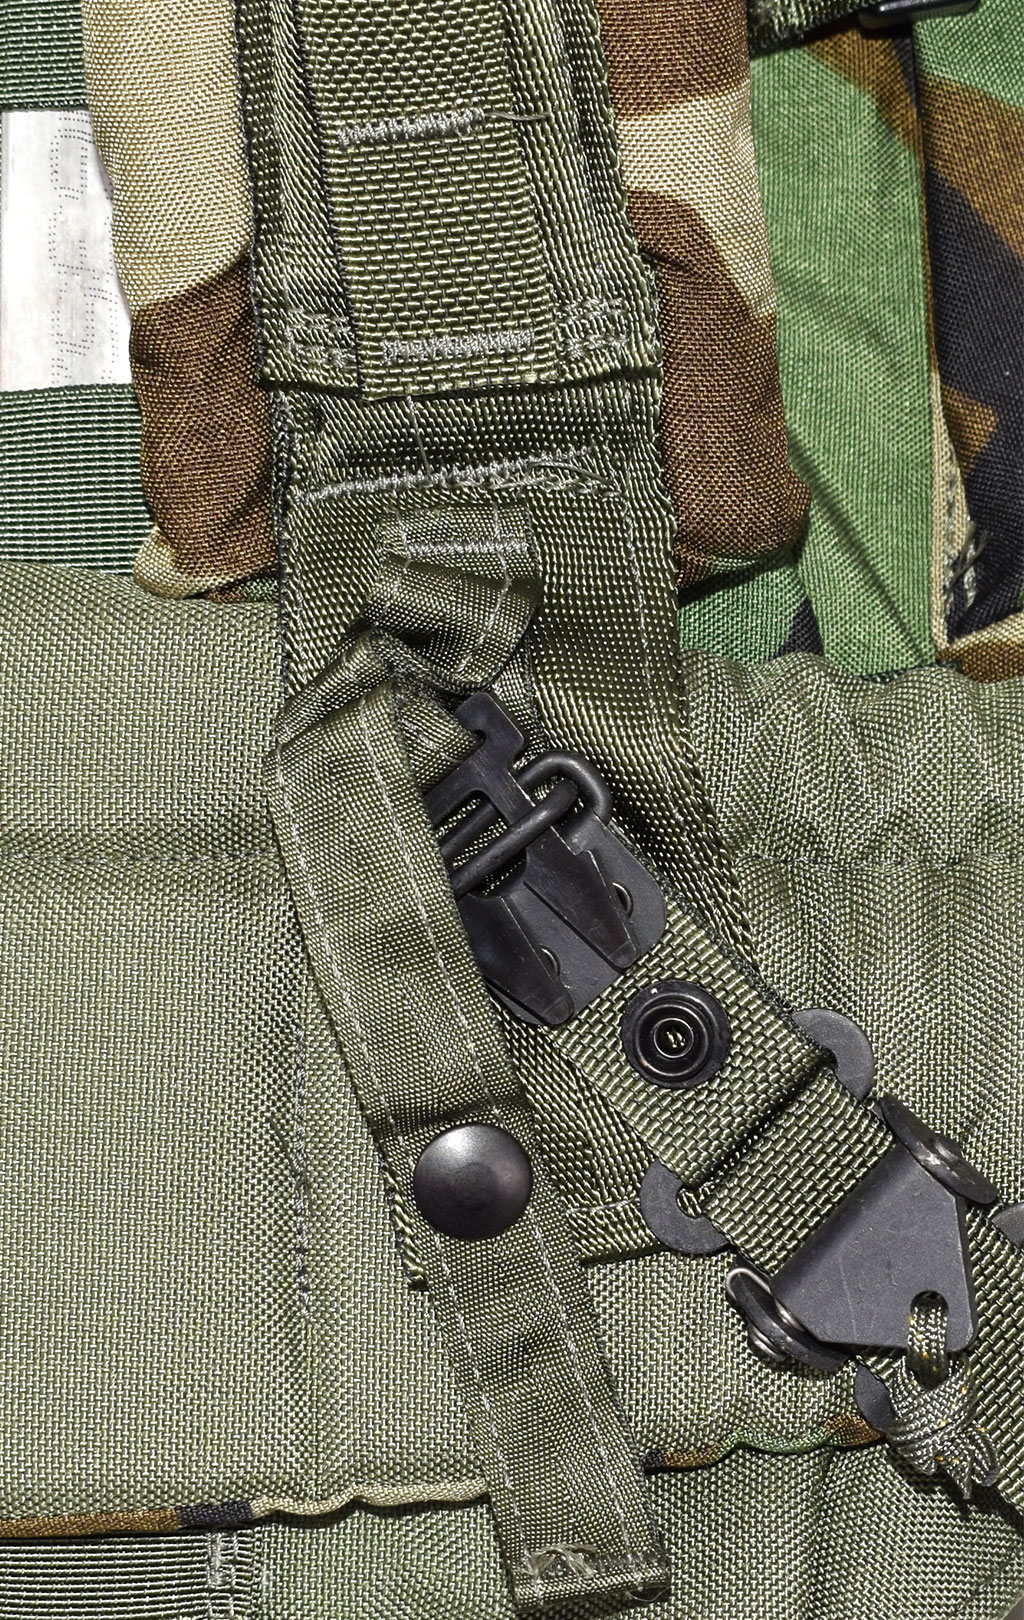 Рюкзак рейдовый CFP-90 camo woodland США